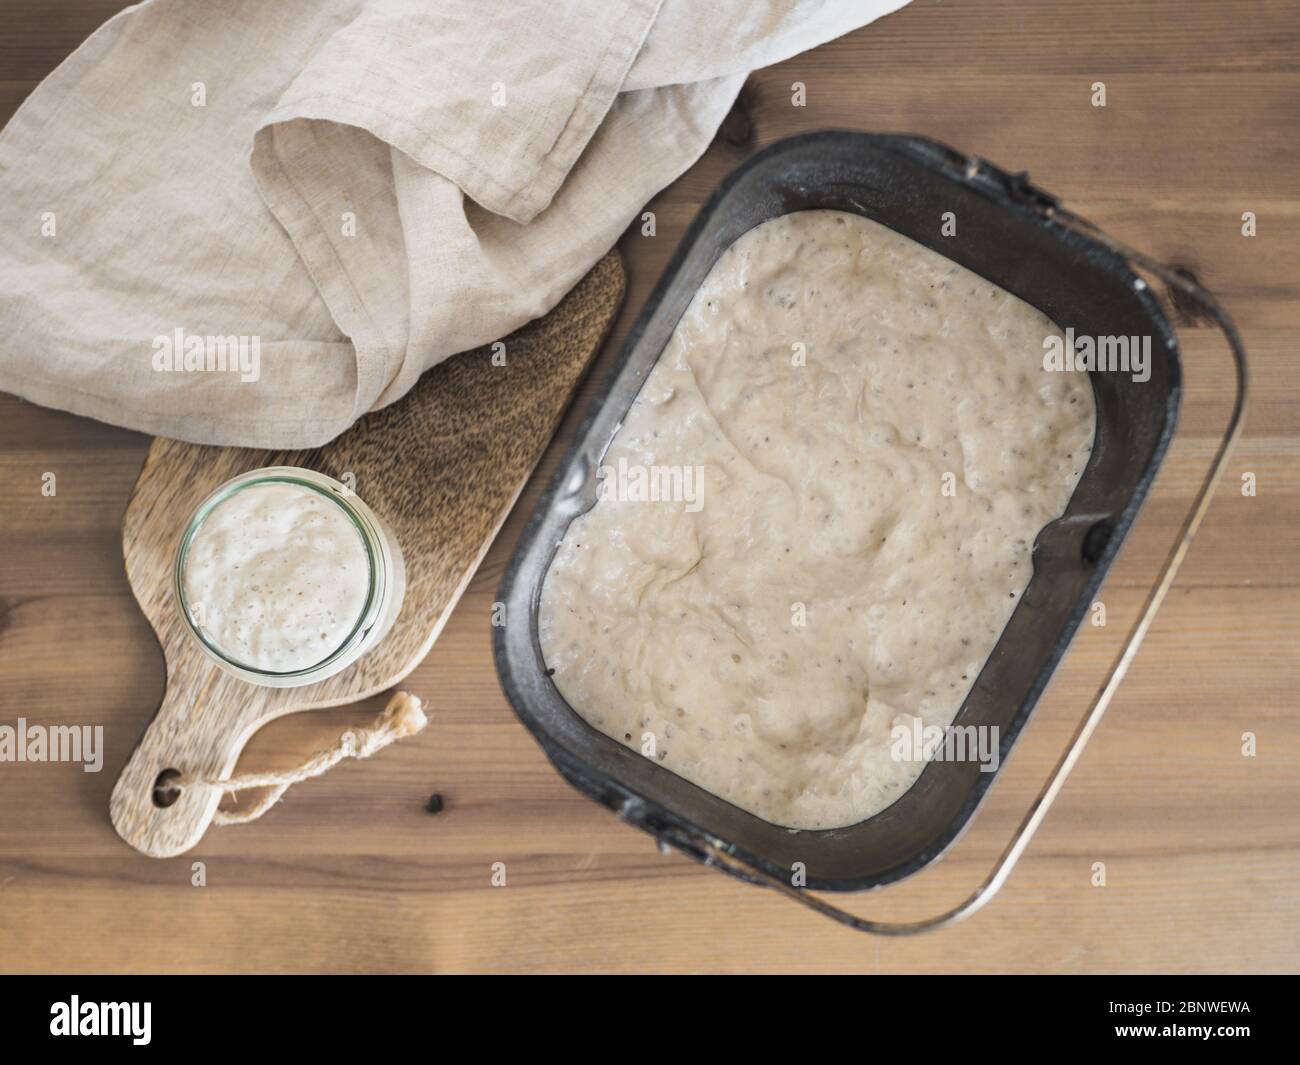 Masa fermentada de trigo en jarra de cristal y masa fermentada en pan de pan de máquina para hacer pan. Concepto de panificadora casera Foto de stock